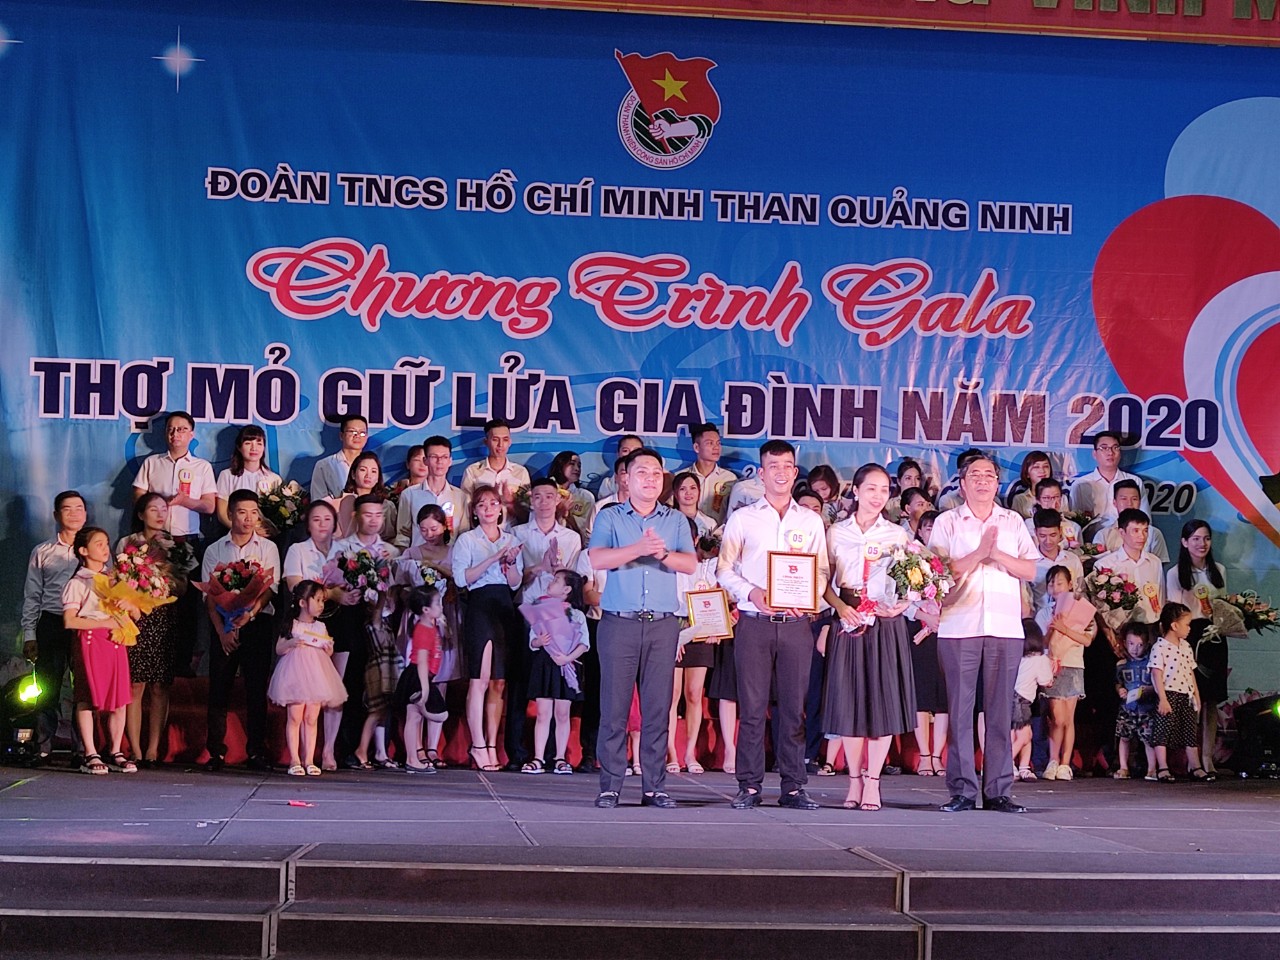 Gia đình anh Nguyễn Văn Thái, chị Nguyễn Thị Thúy Liên đến từ Đoàn TN Công ty Than Mạo Khê giành giải nhất Gala